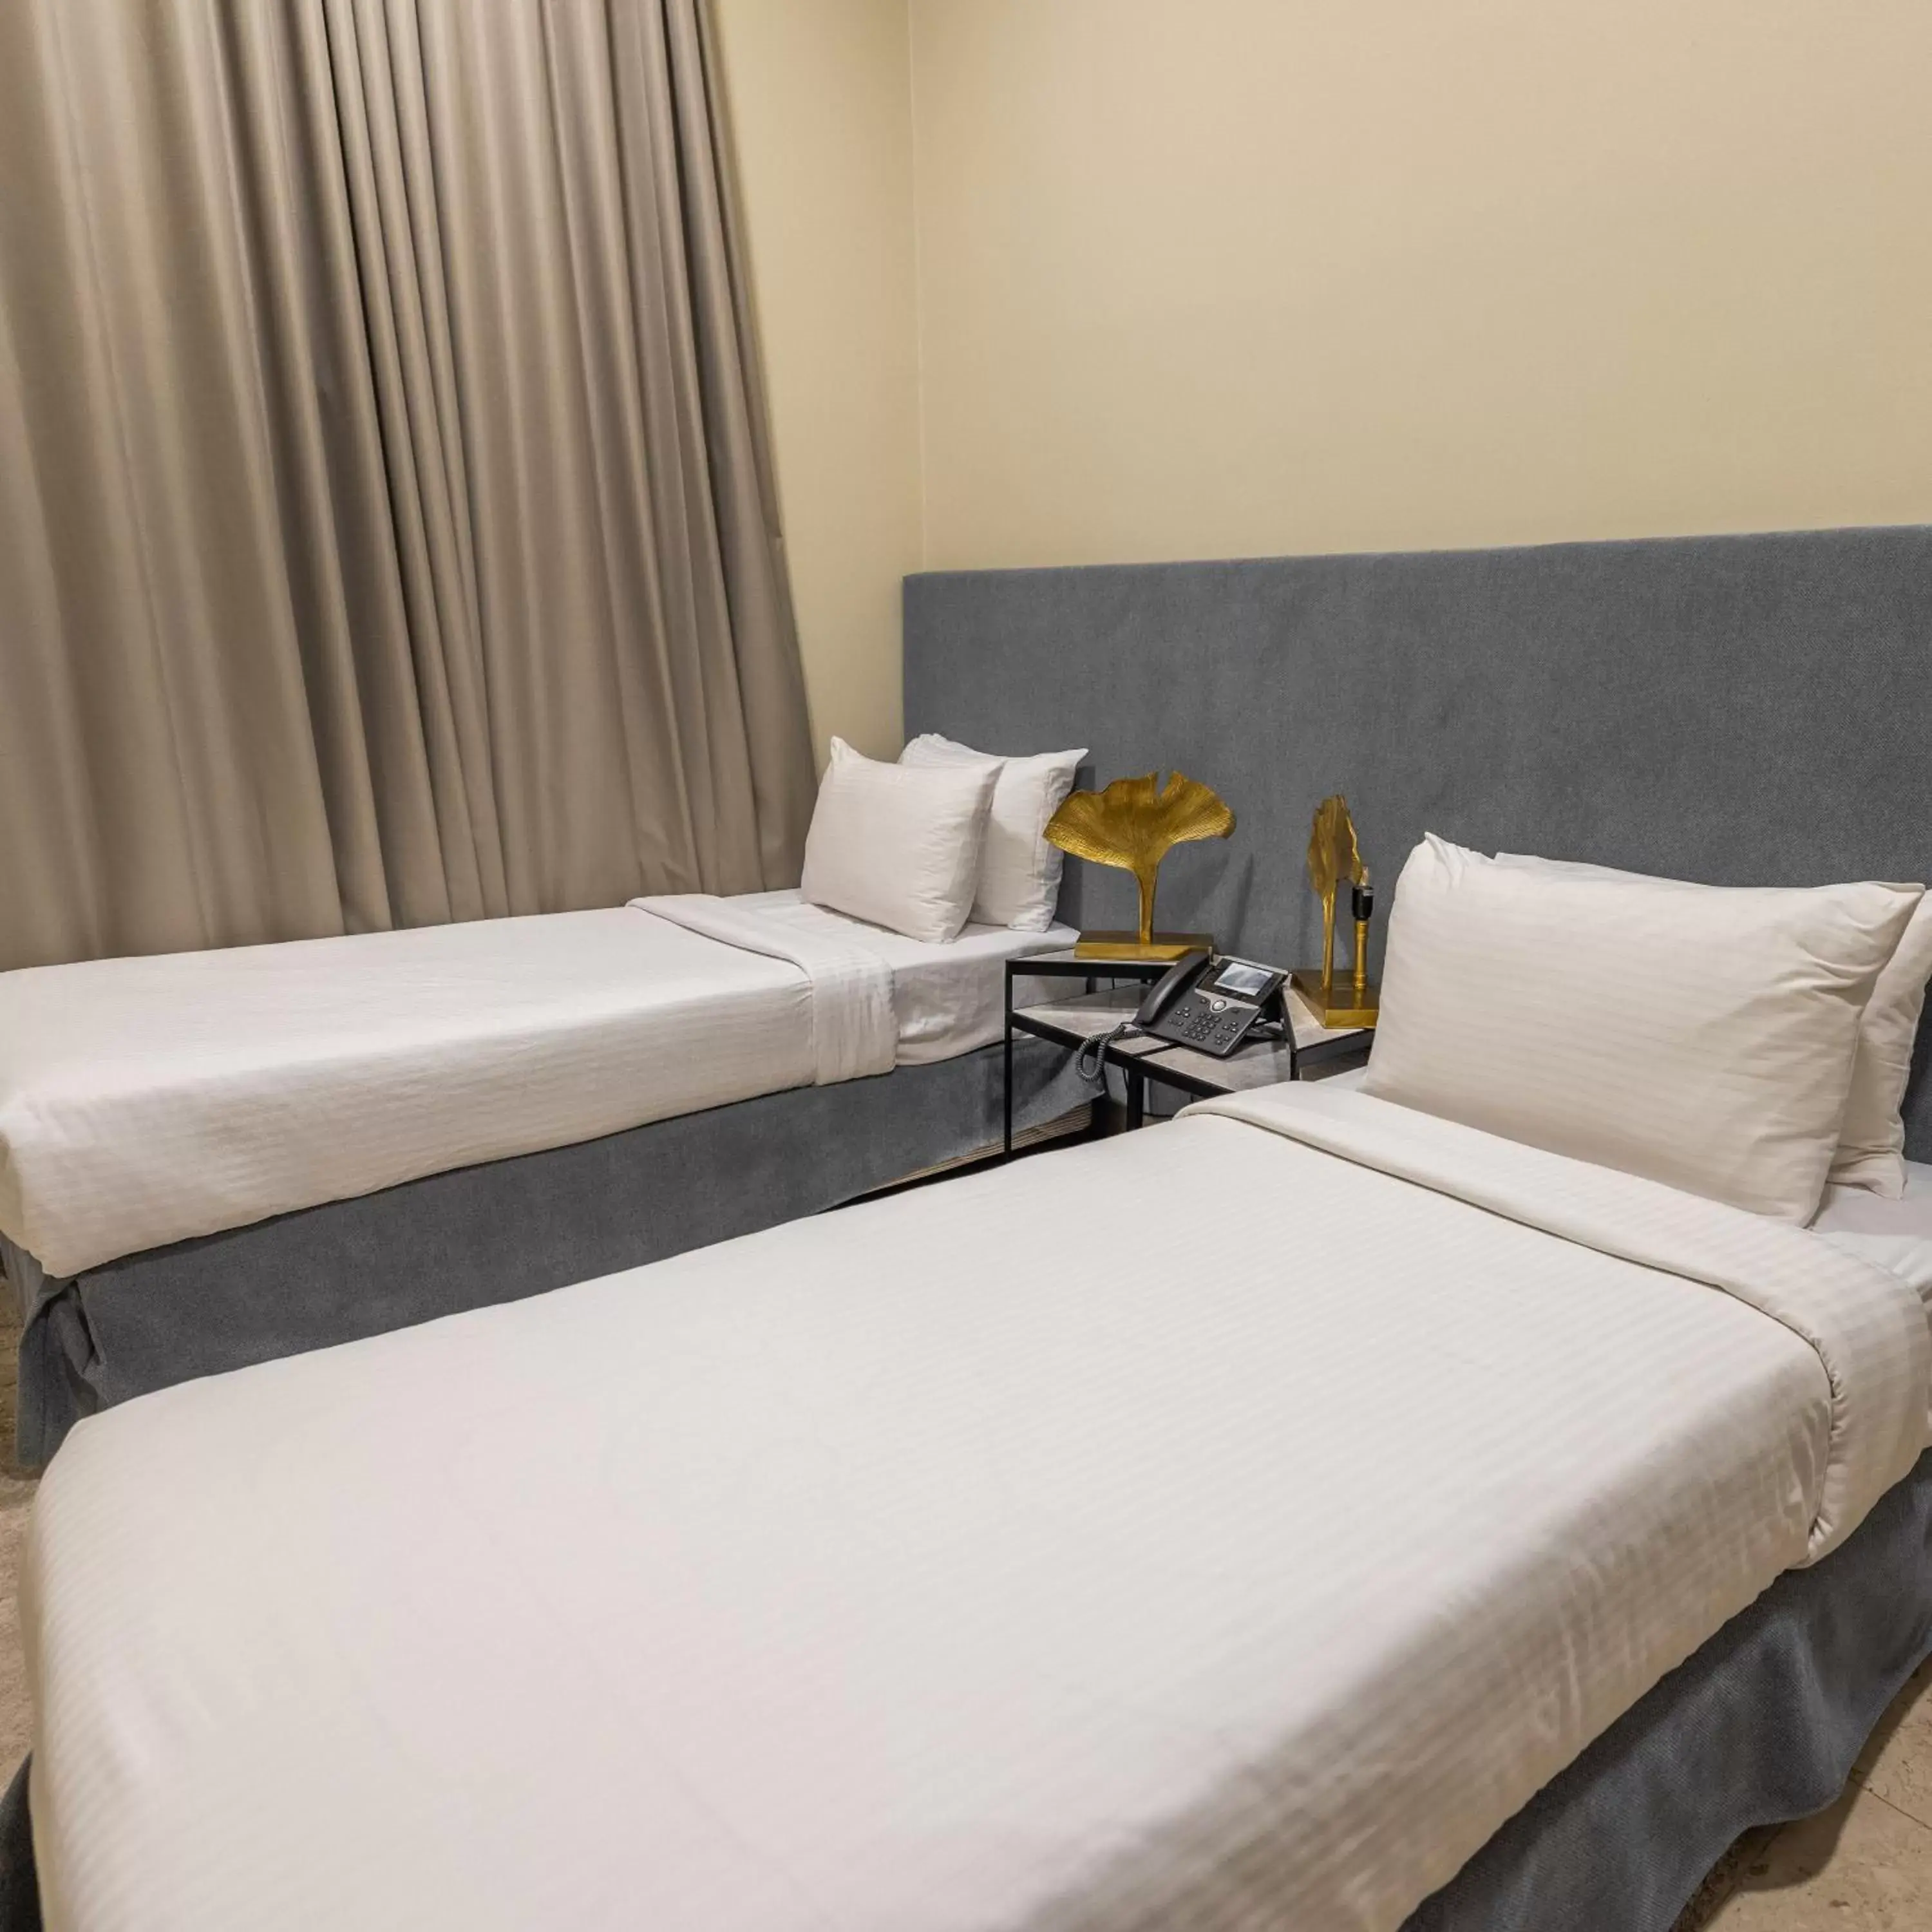 Bed in Argan Al Bidaa Hotel and Resort , Kuwait